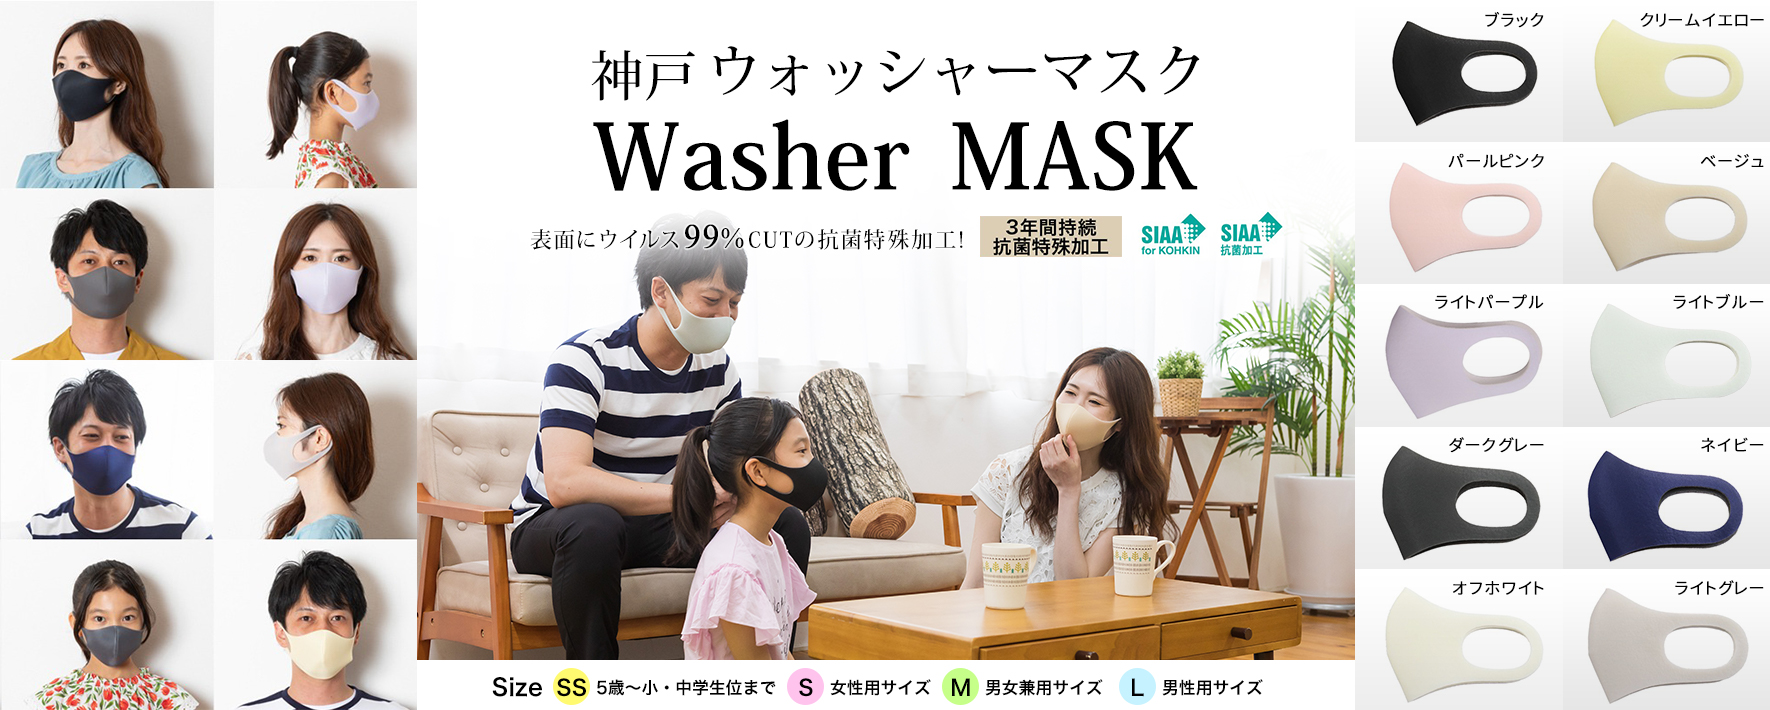 washermask